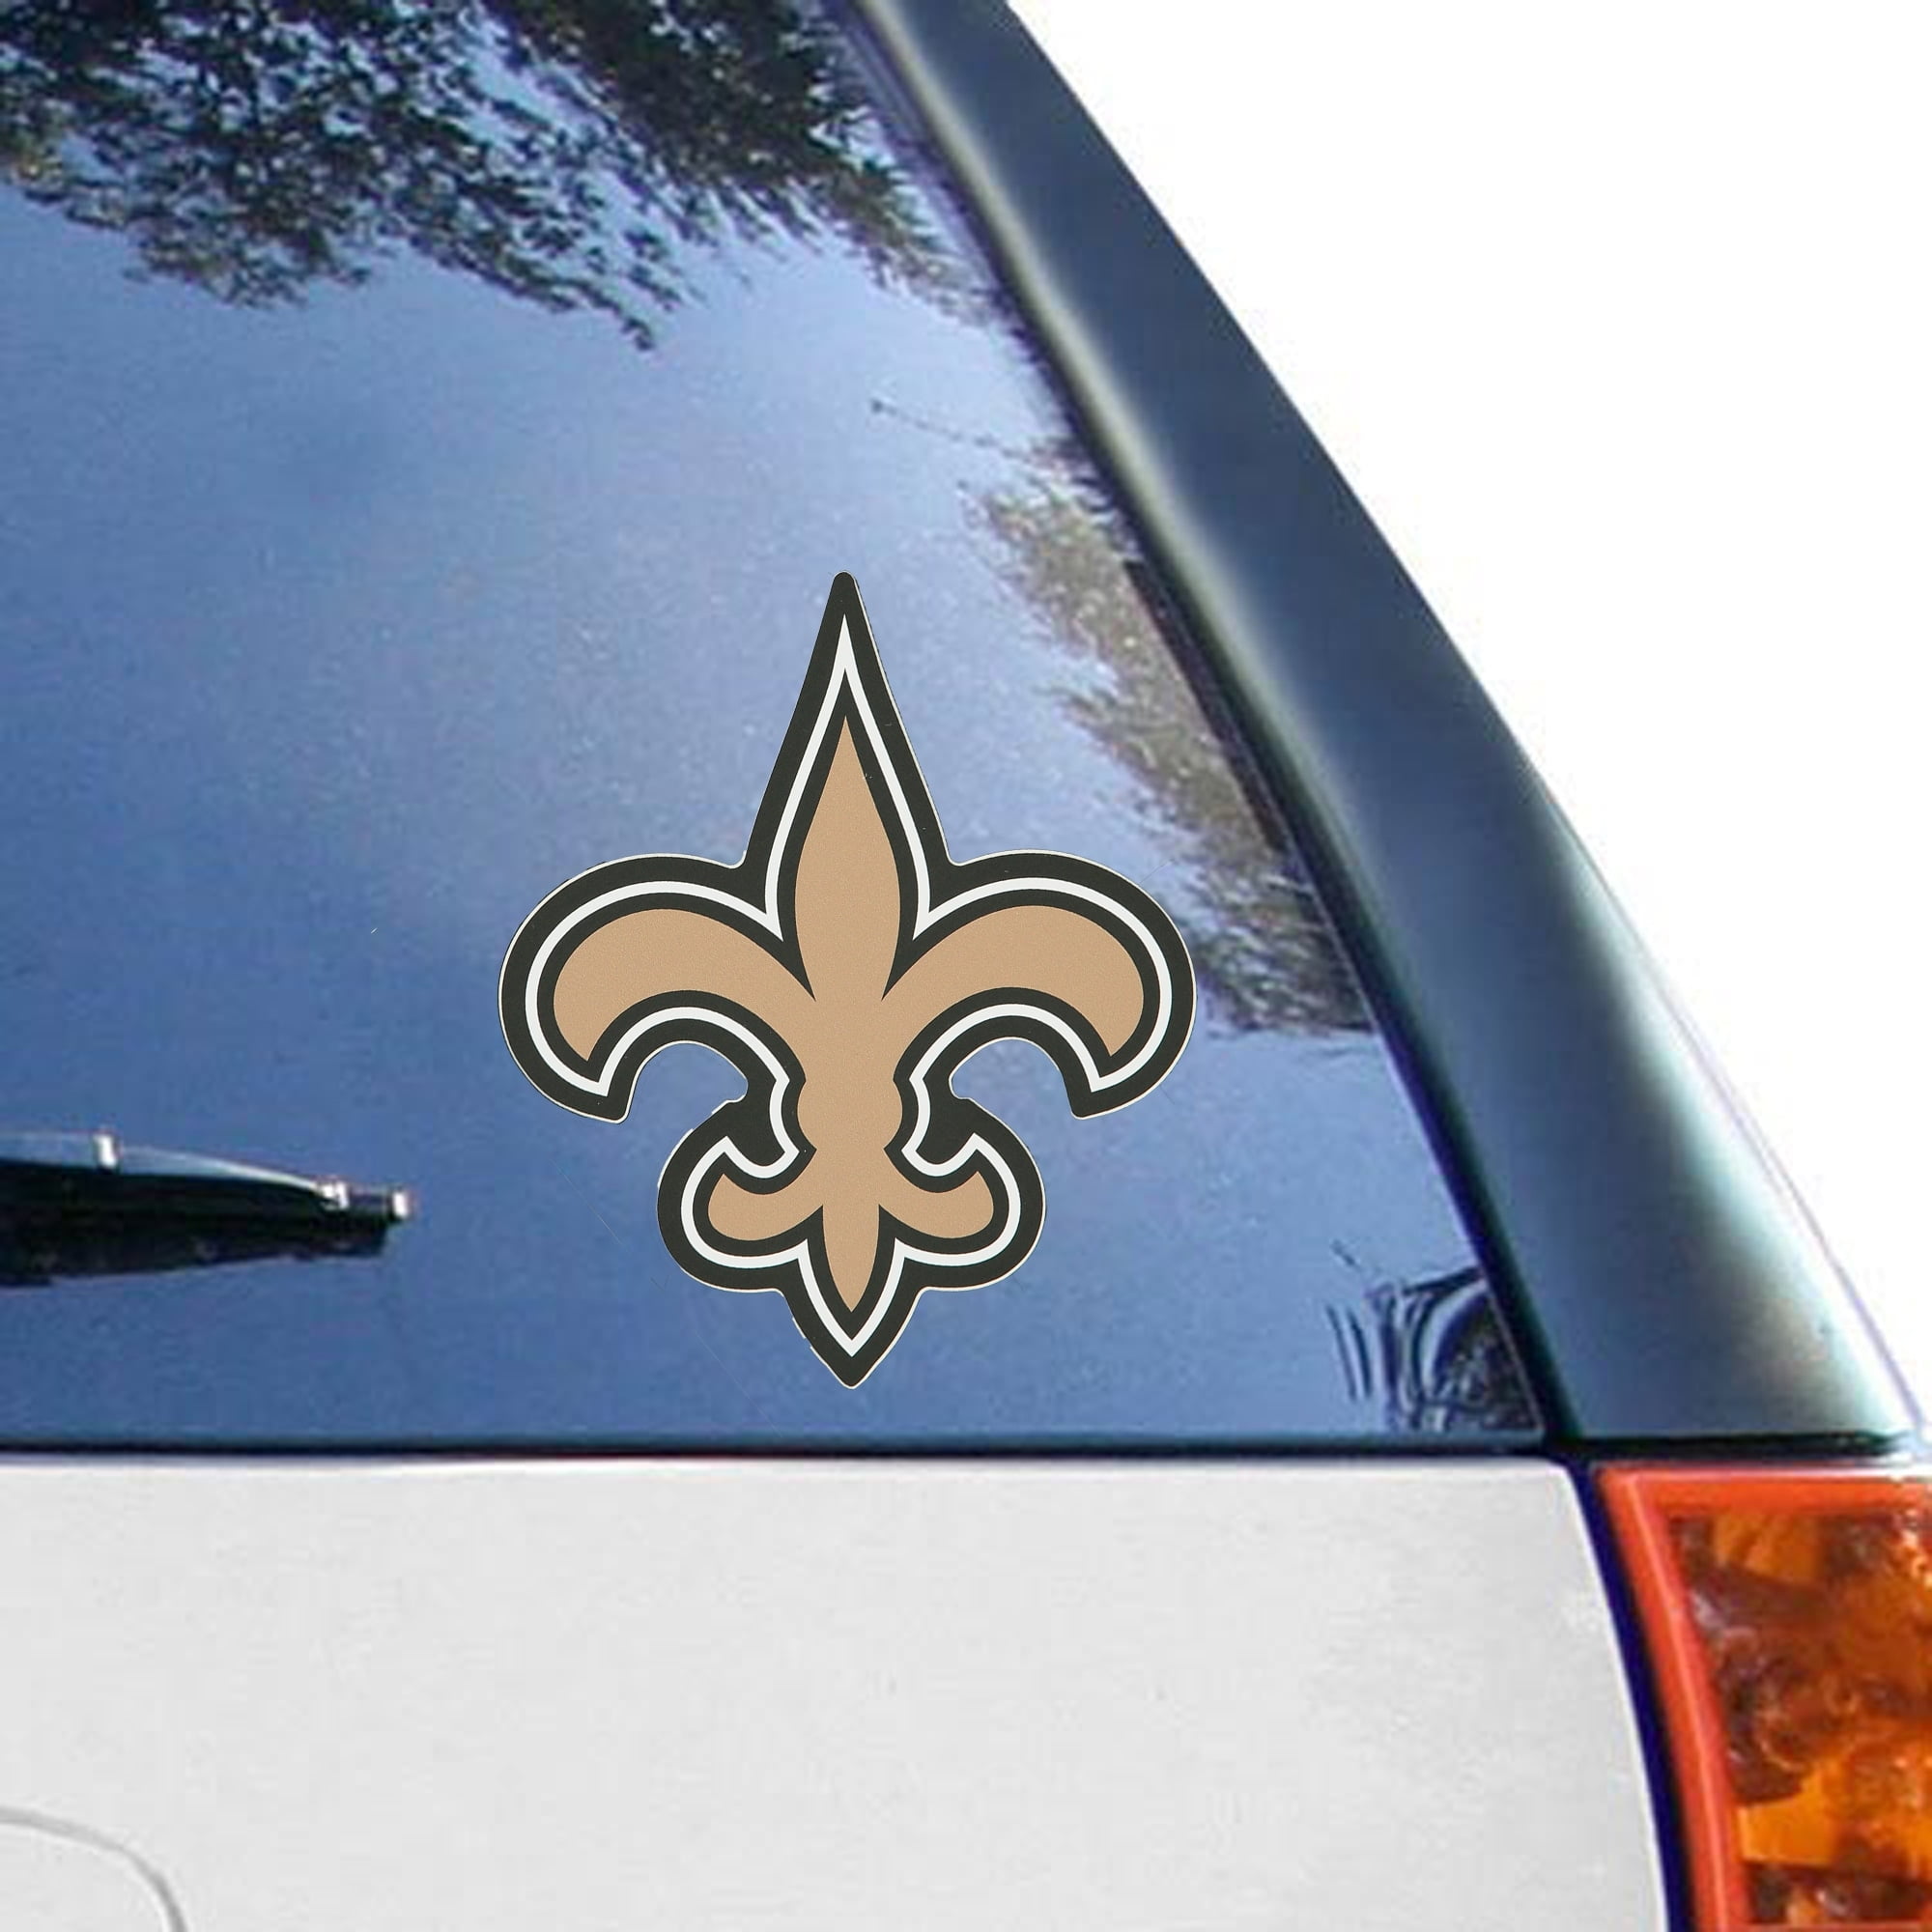 New Orlean for Life Sport Car Bumper Sticker Decal 5 X 5 hotprint Saint Football